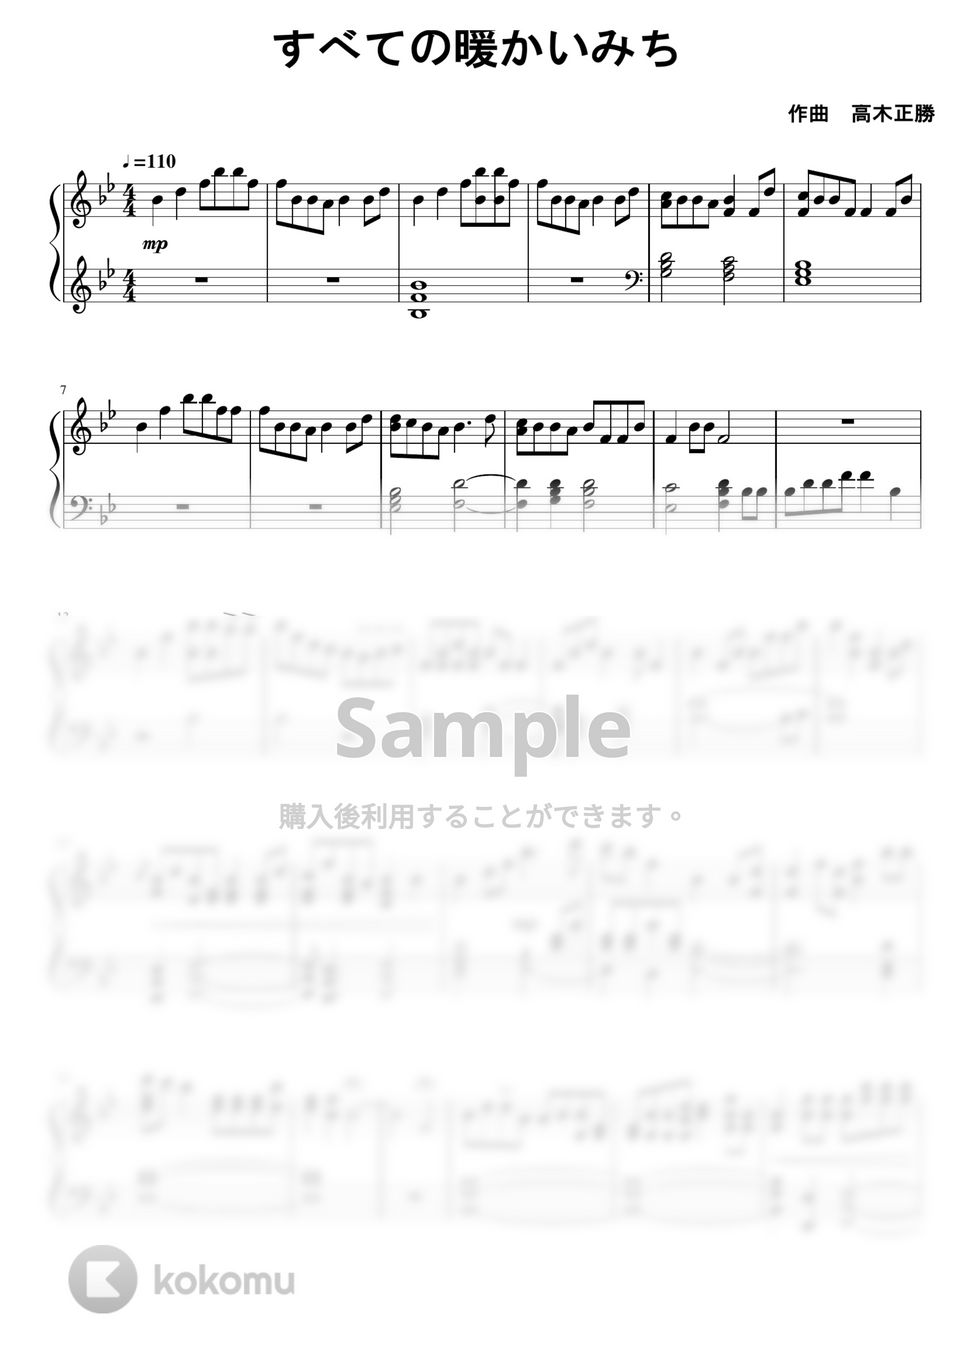 おおかみこどもの雨と雪 - すべての暖かいみち (ピアノソロ) by Central Sulcus